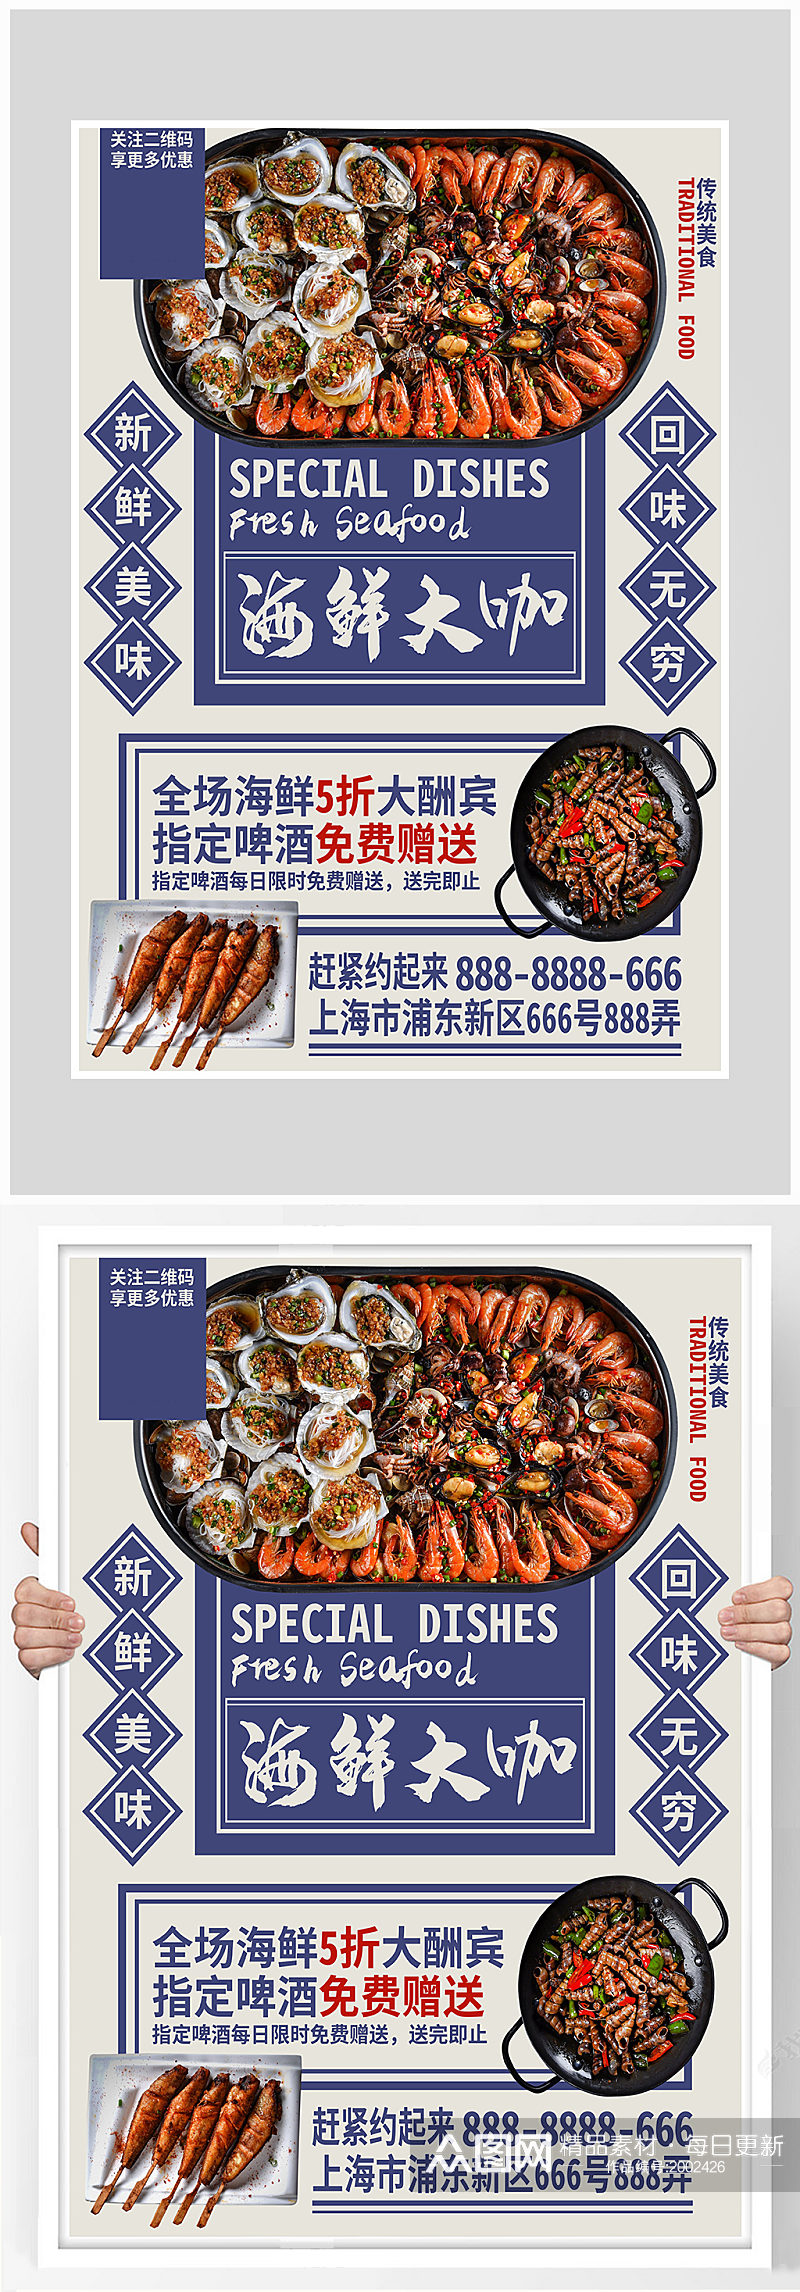 创意质感烧烤海鲜烤串海报设计素材